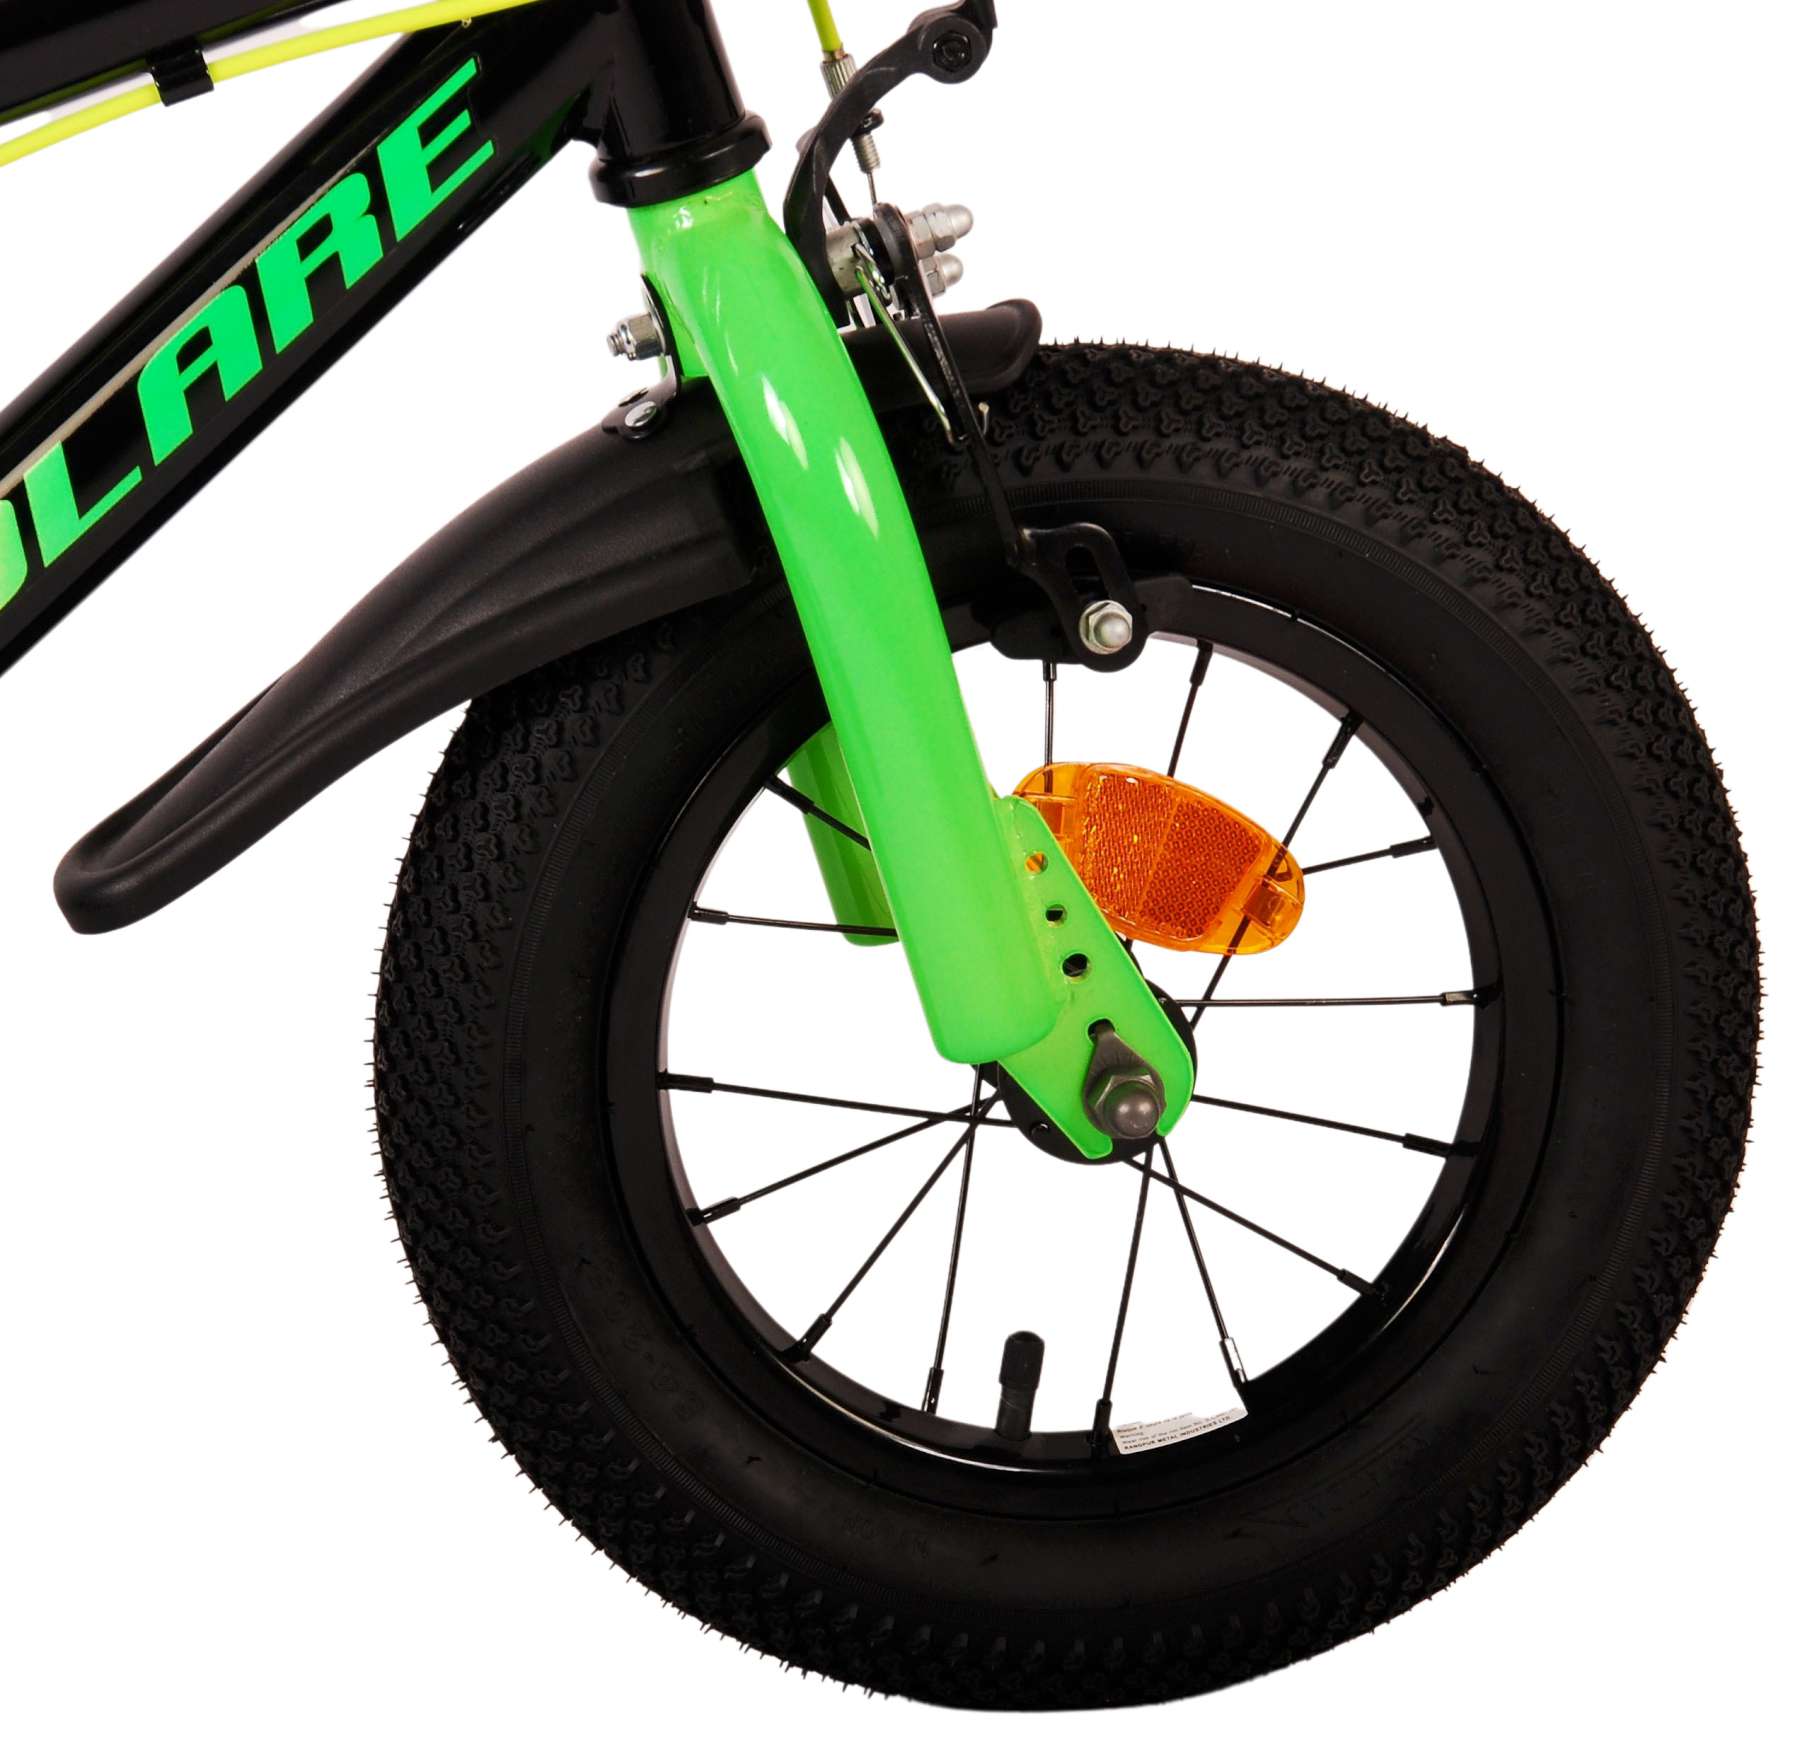 Kinderfahrrad Super GT für Jungen 12 Zoll Kinderrad in Grün Fahrrad 